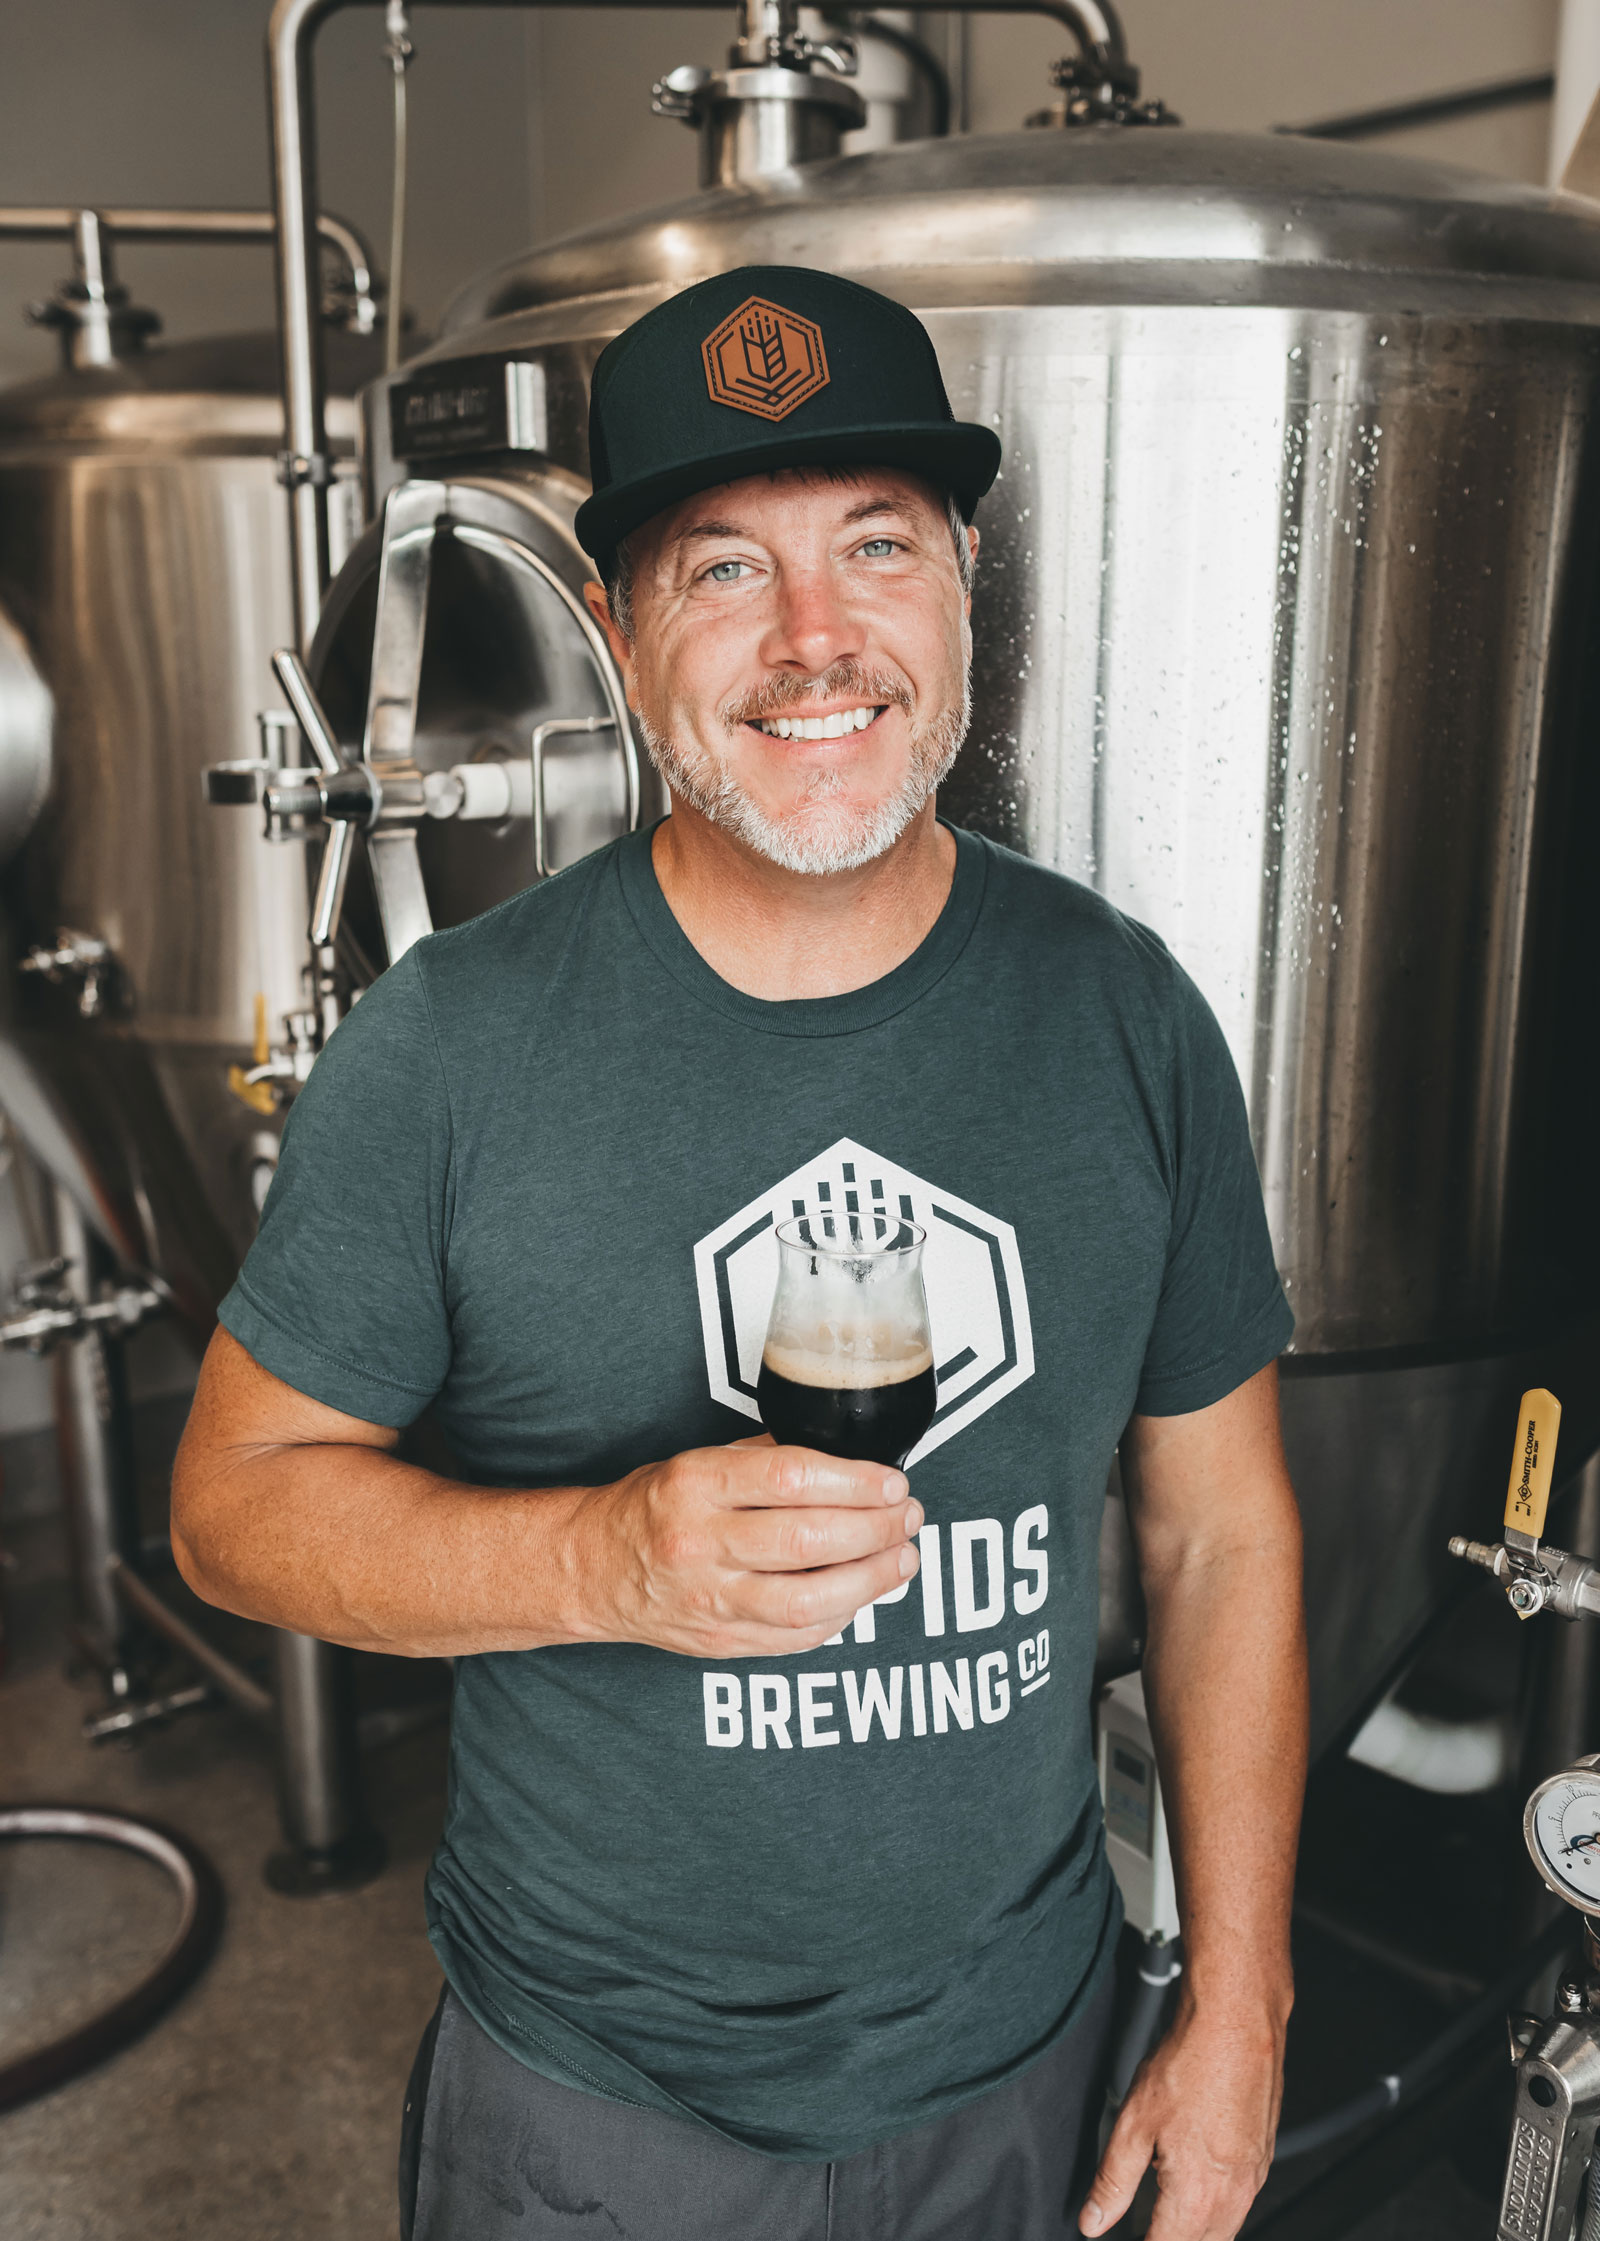 Head brewer Darin Jensen smiling